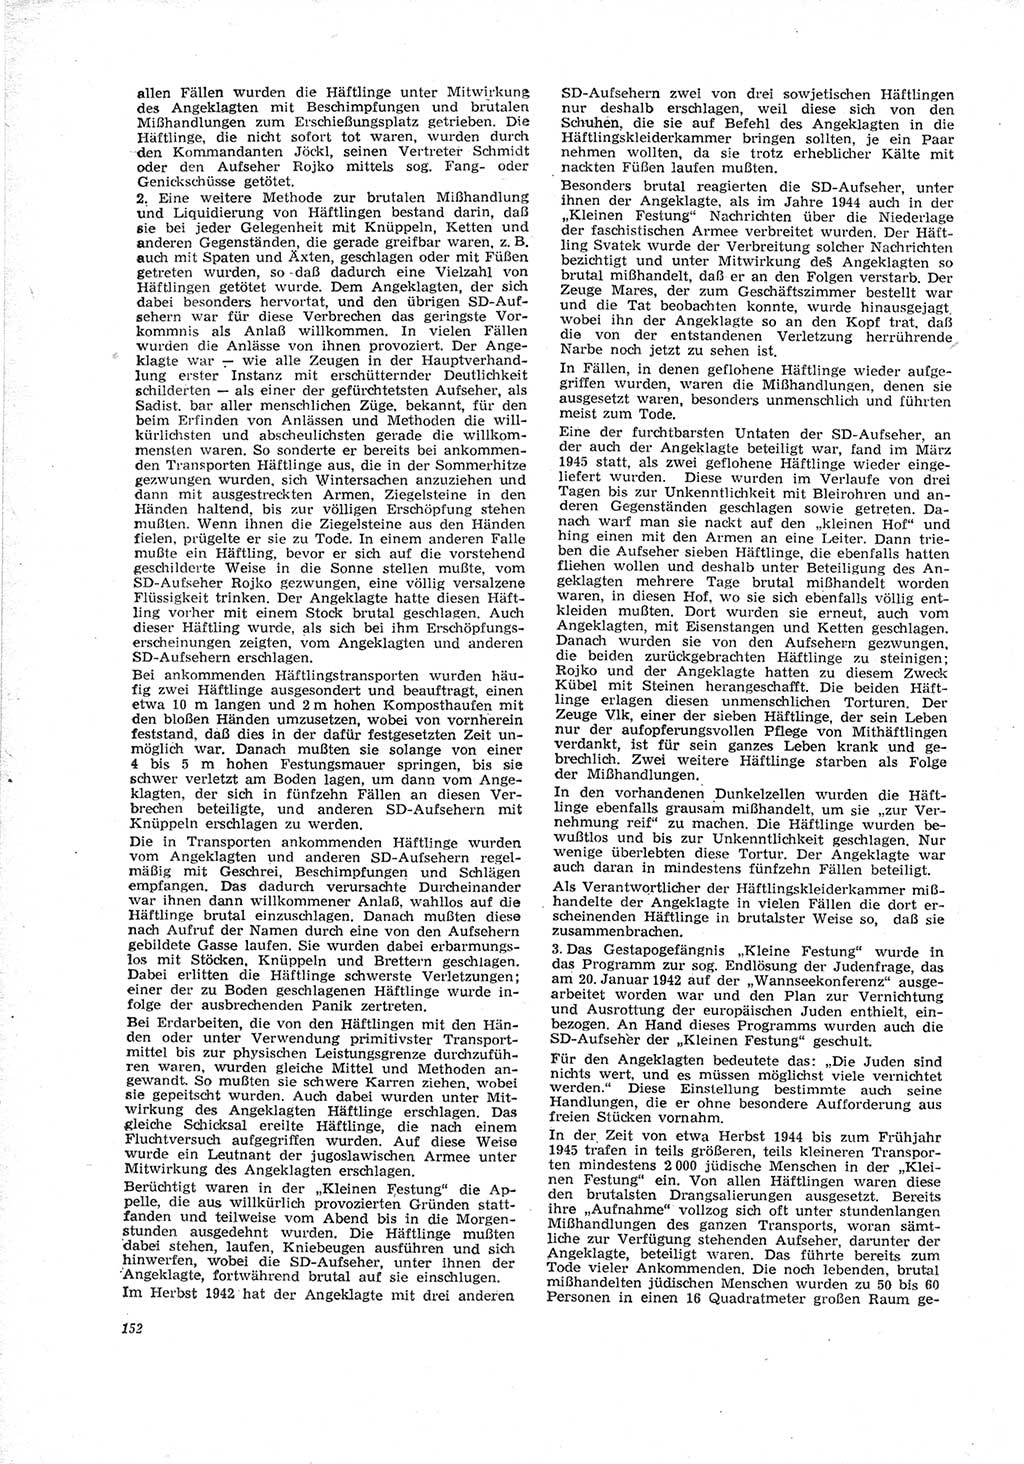 Neue Justiz (NJ), Zeitschrift für Recht und Rechtswissenschaft [Deutsche Demokratische Republik (DDR)], 23. Jahrgang 1969, Seite 152 (NJ DDR 1969, S. 152)